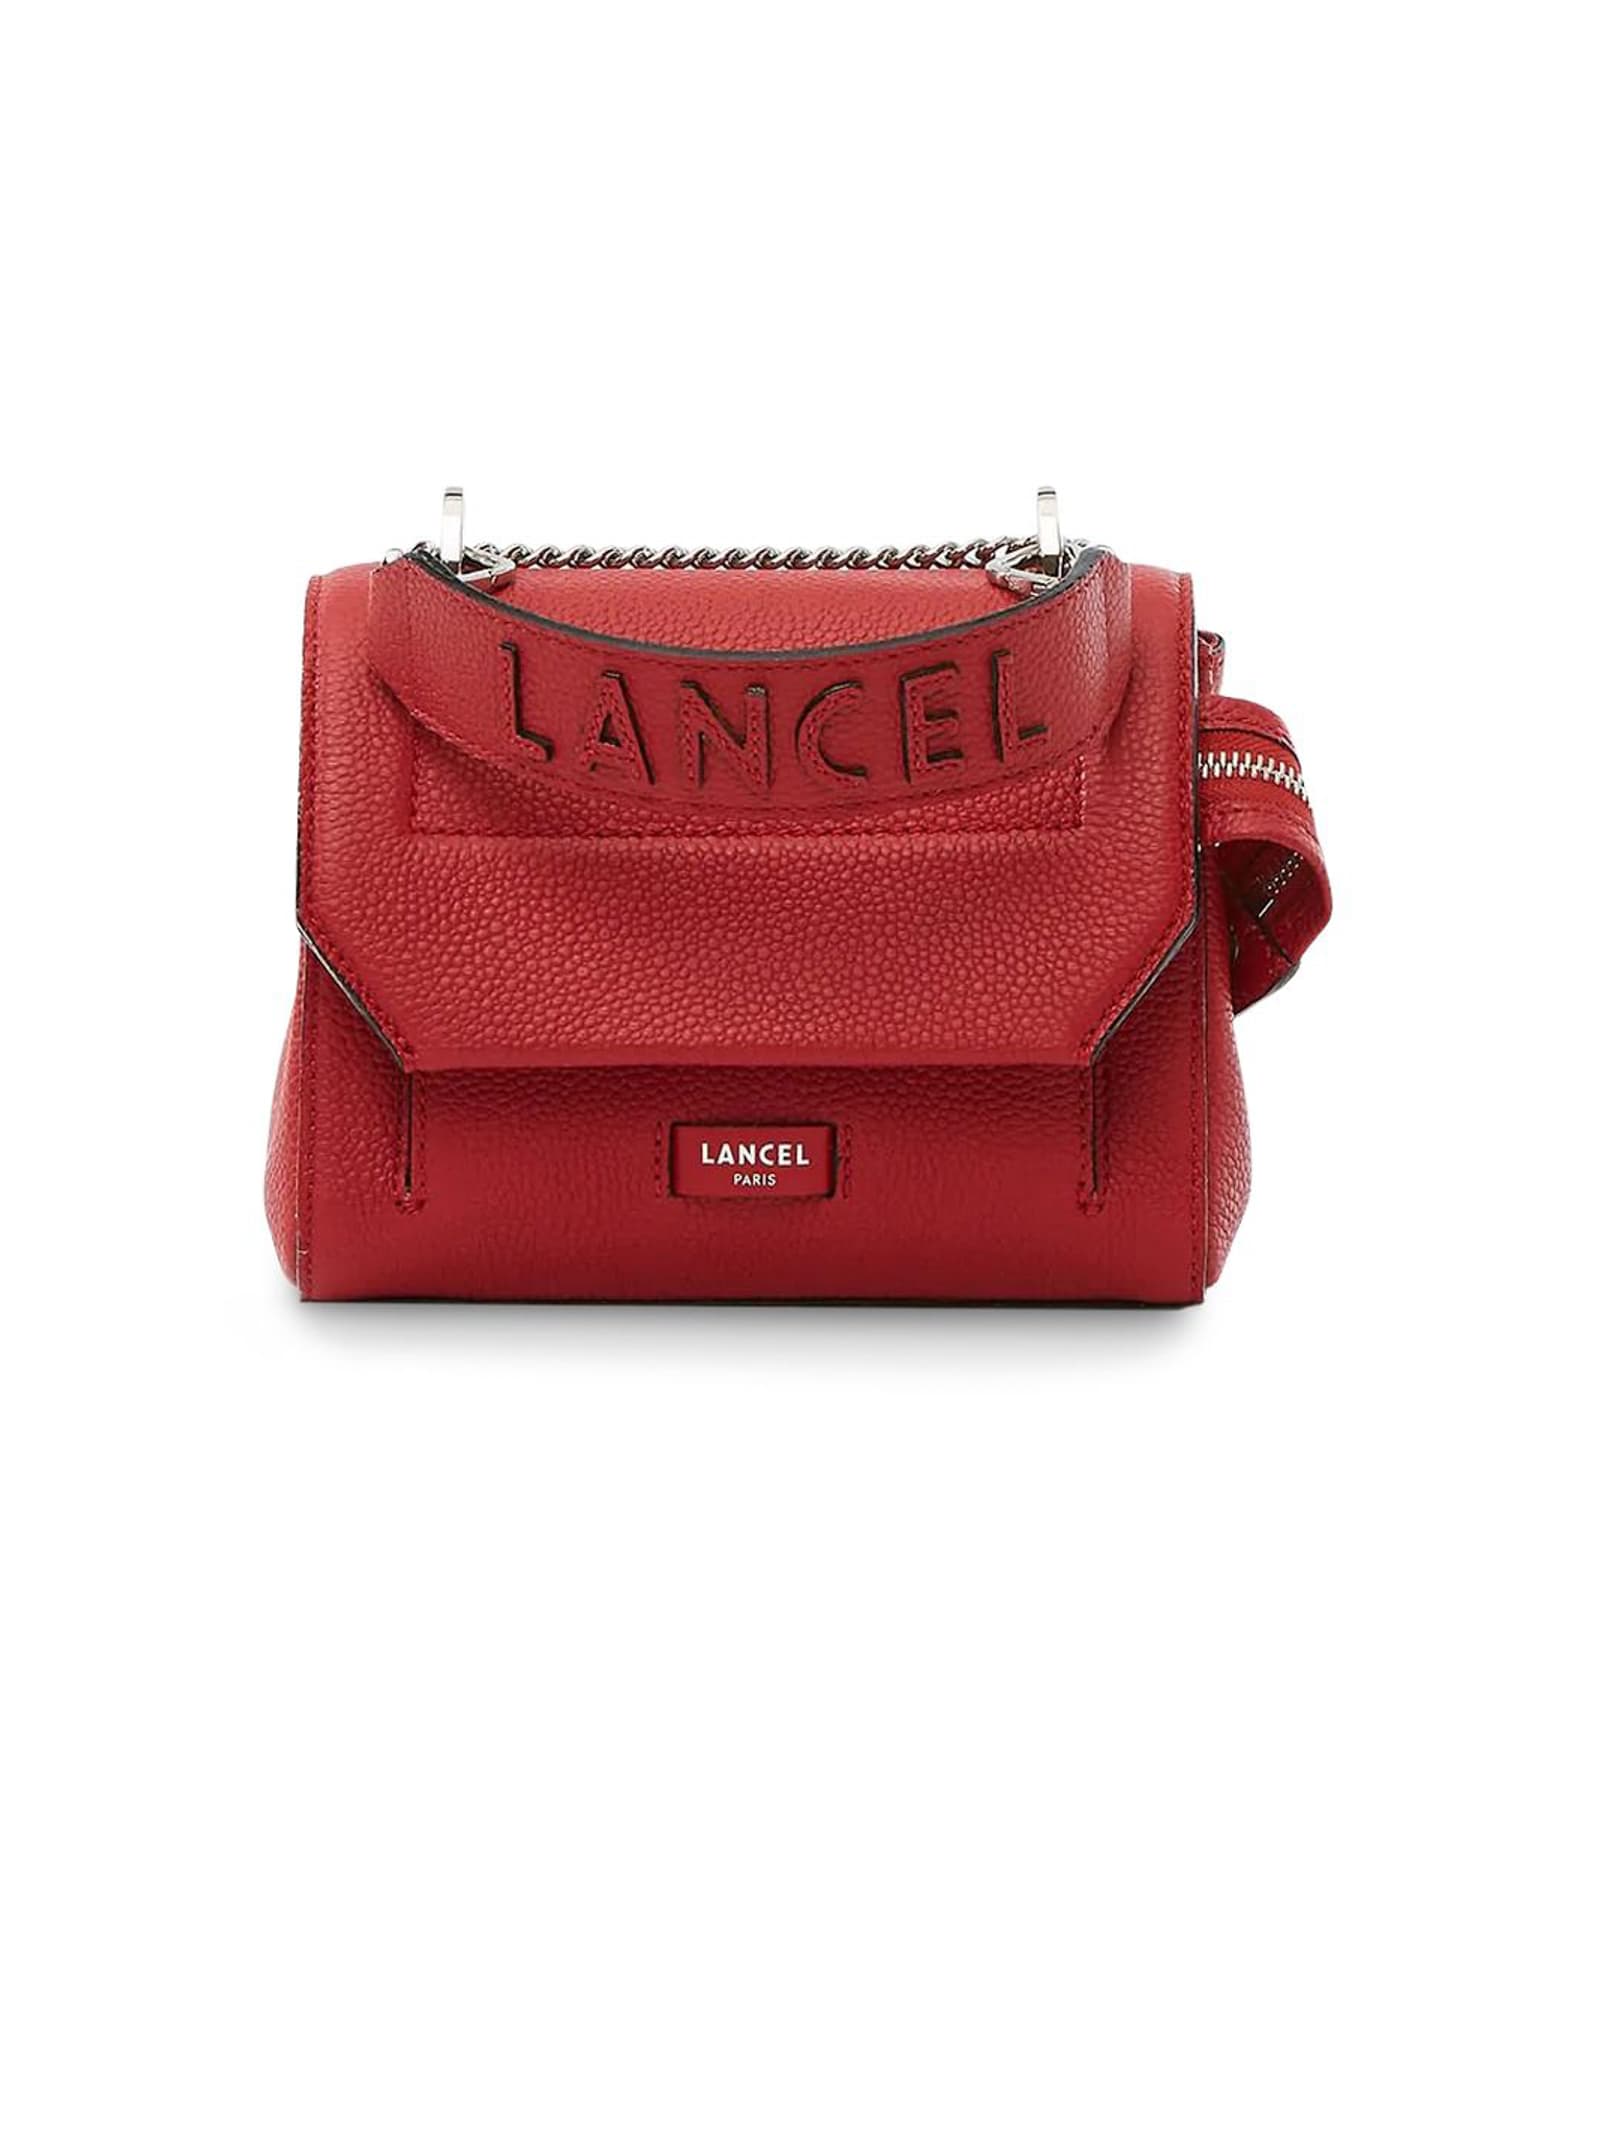 Lancel Red Leather Shoulder Bag